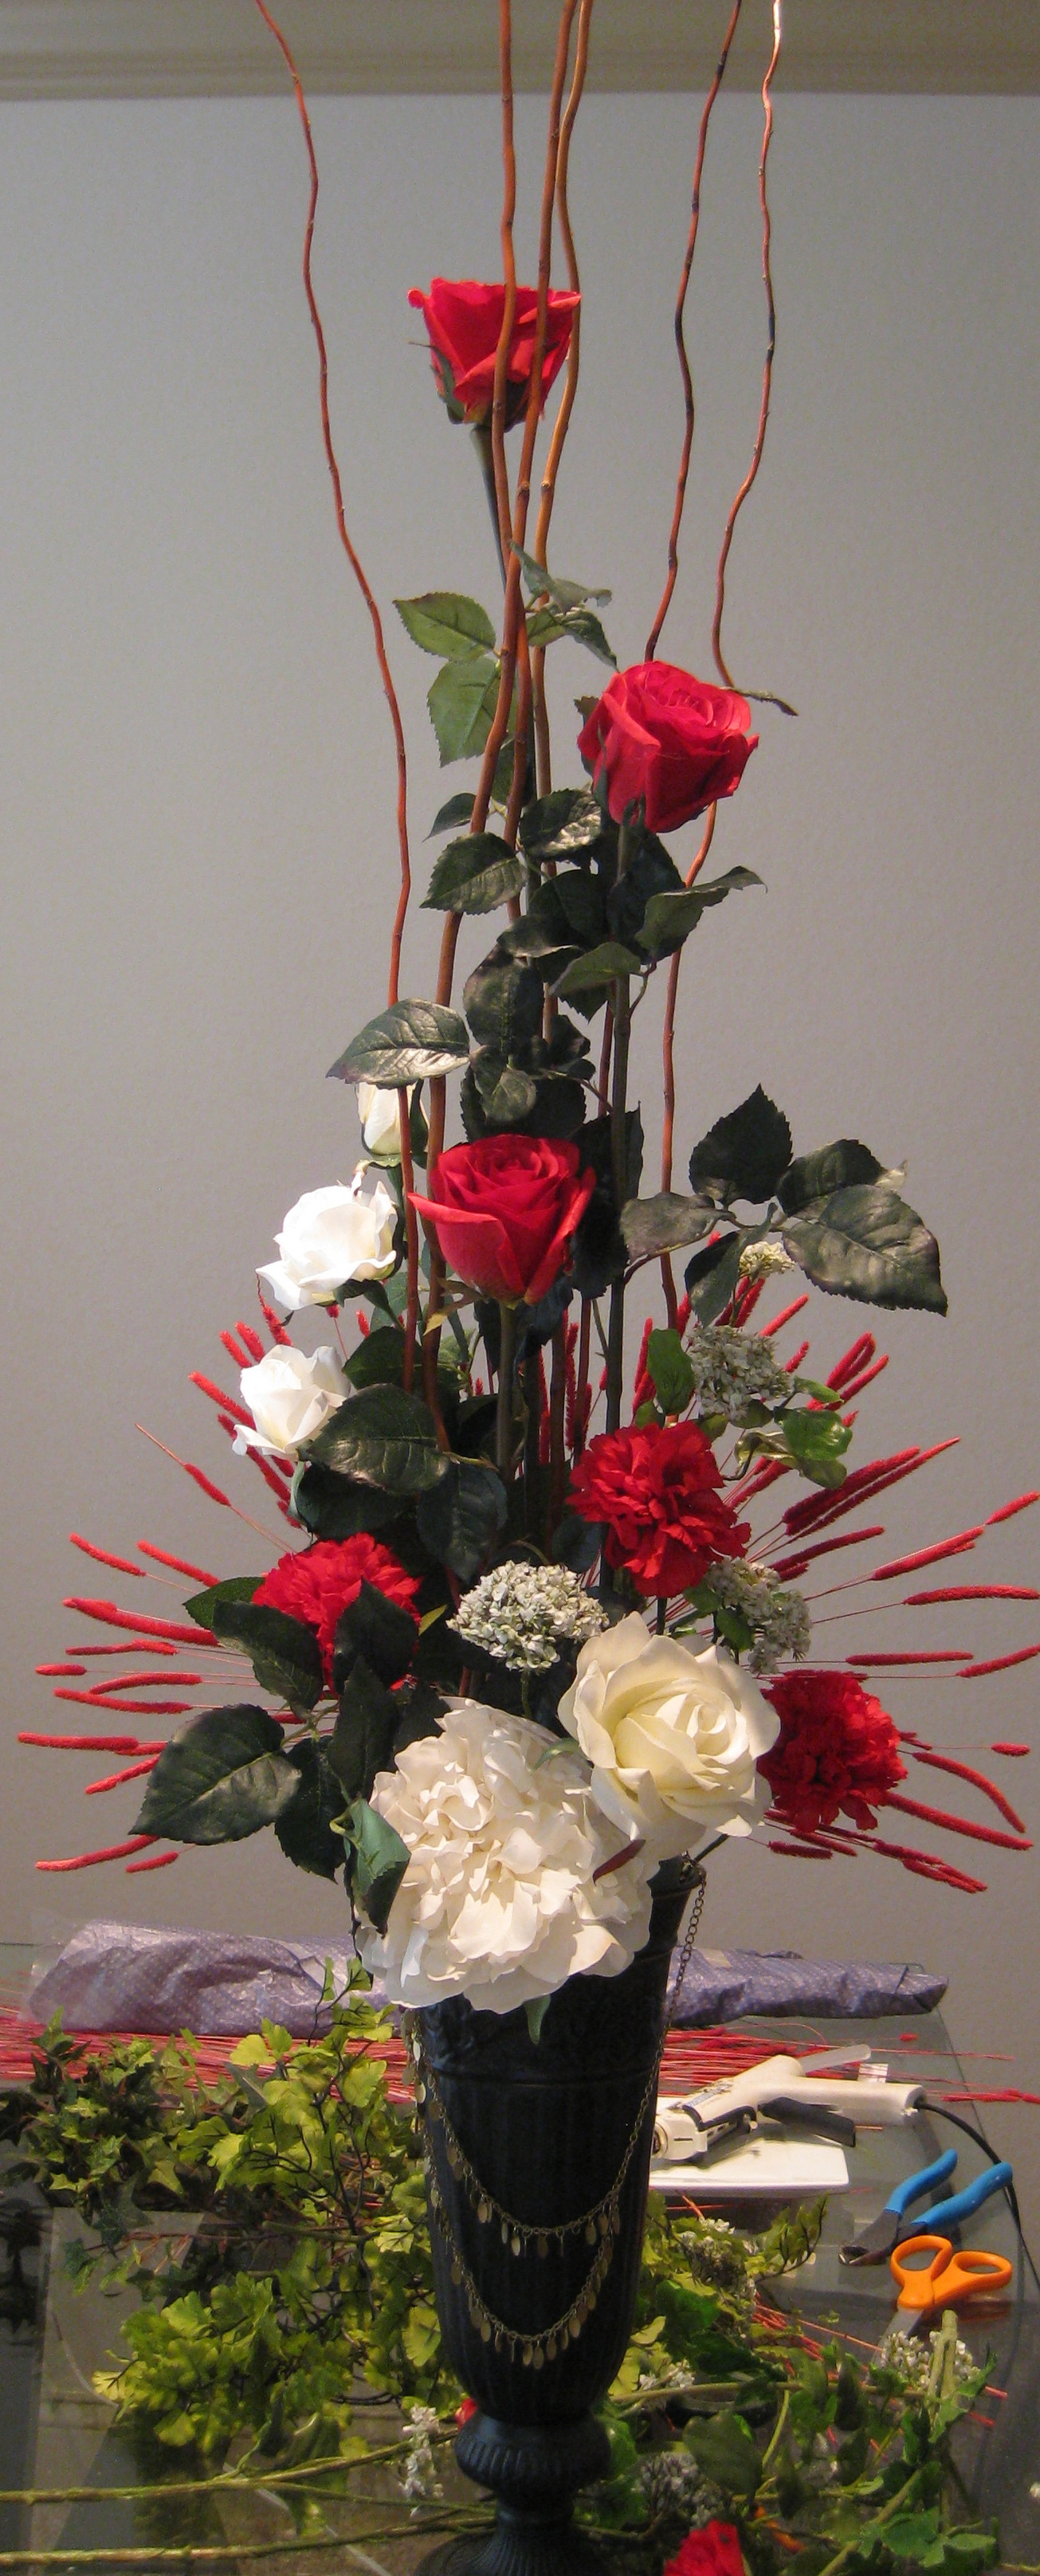 Best ideas about DIY Floral Arrangements
. Save or Pin DIY Valentine’s Day Floral Arrangement Now.